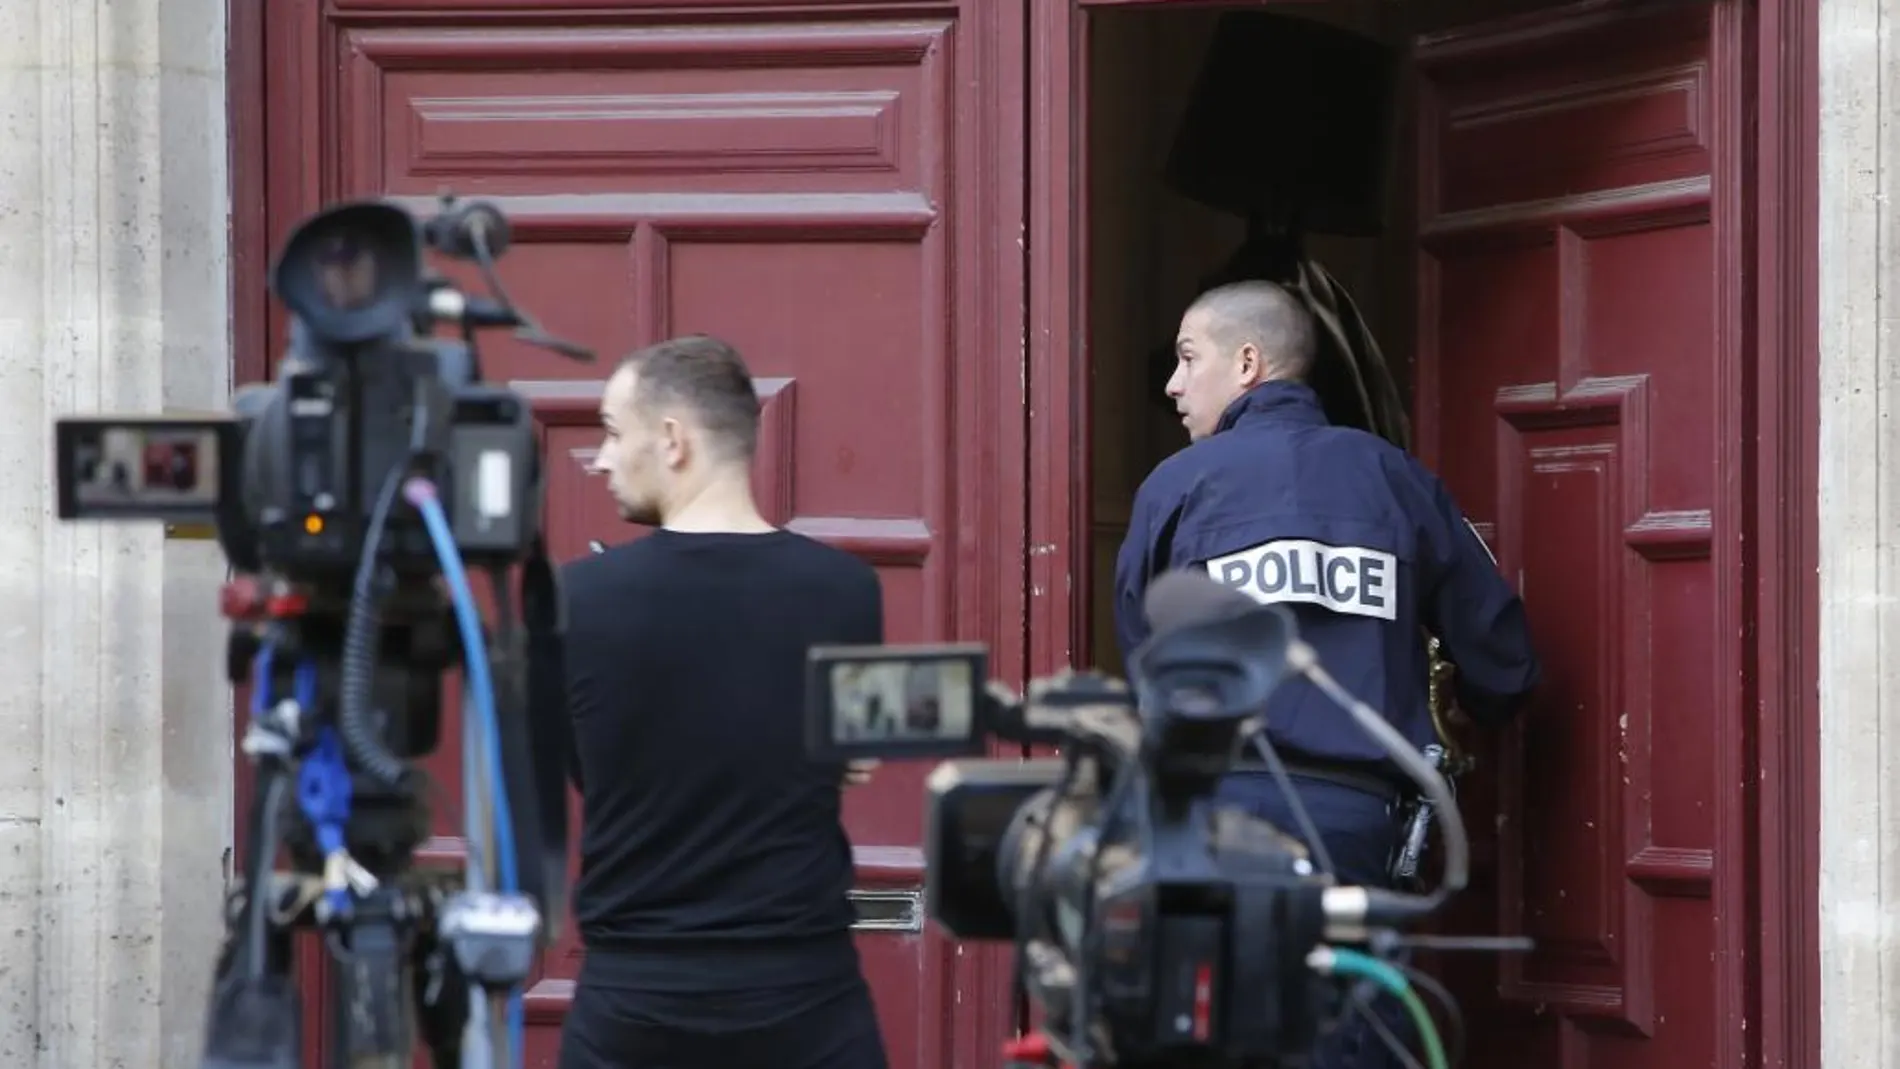 Una gente entra en la residencia de Kim Kardashian en Paris.